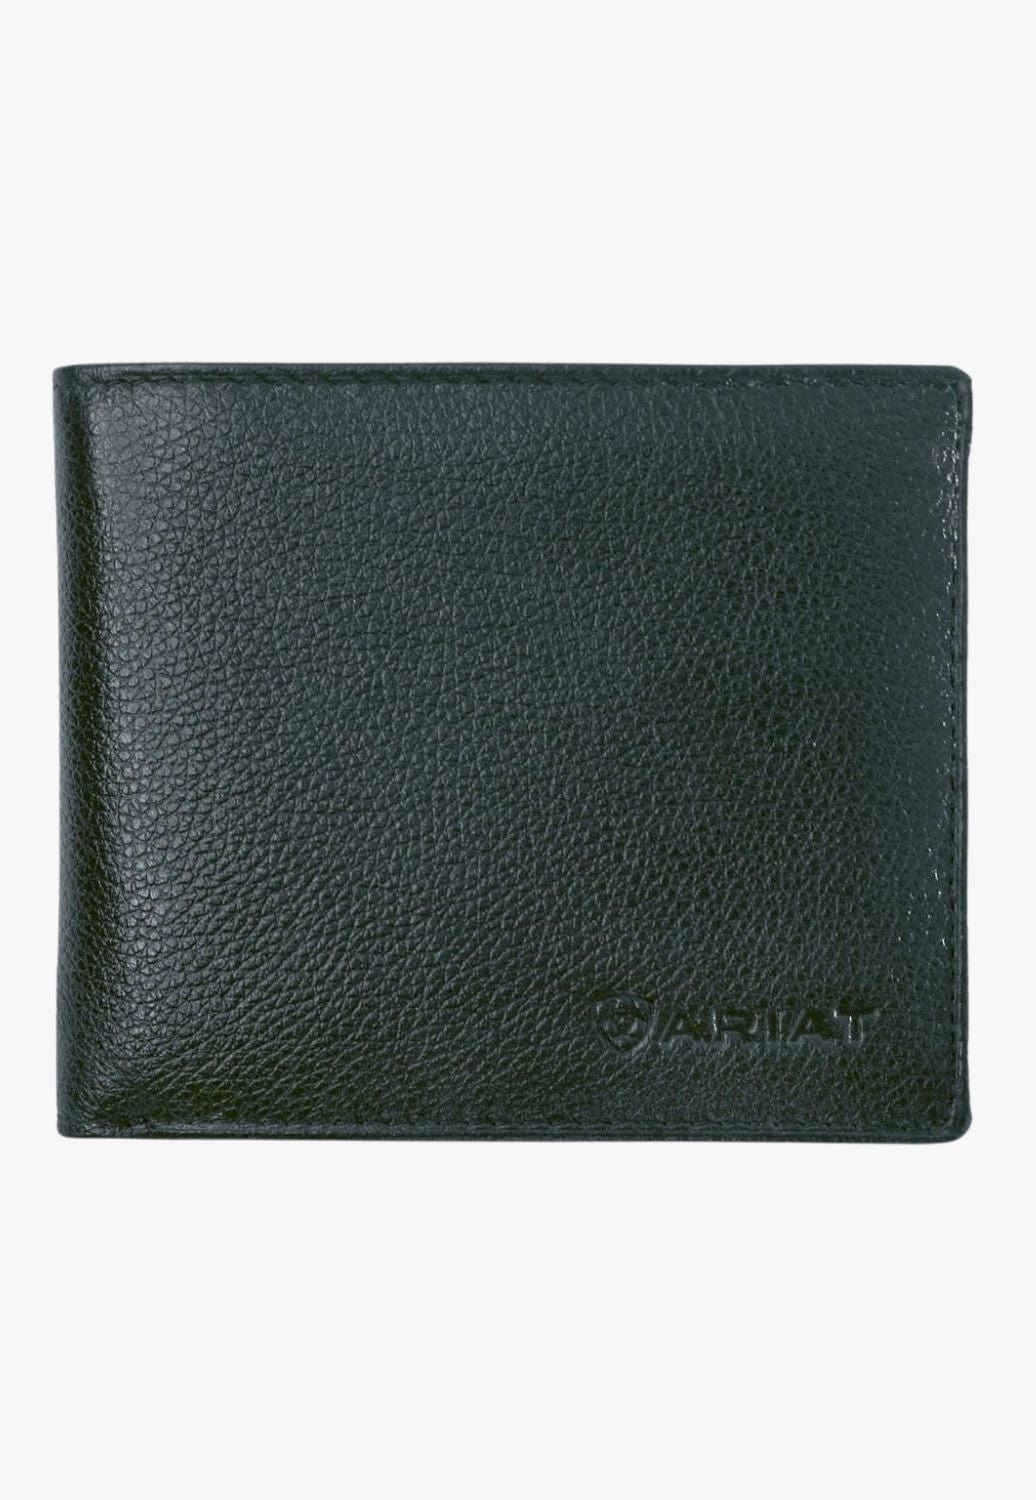 Ariat ACCESSORIES-Mens Wallets Black Ariat Mens Bi-Fold Wallet